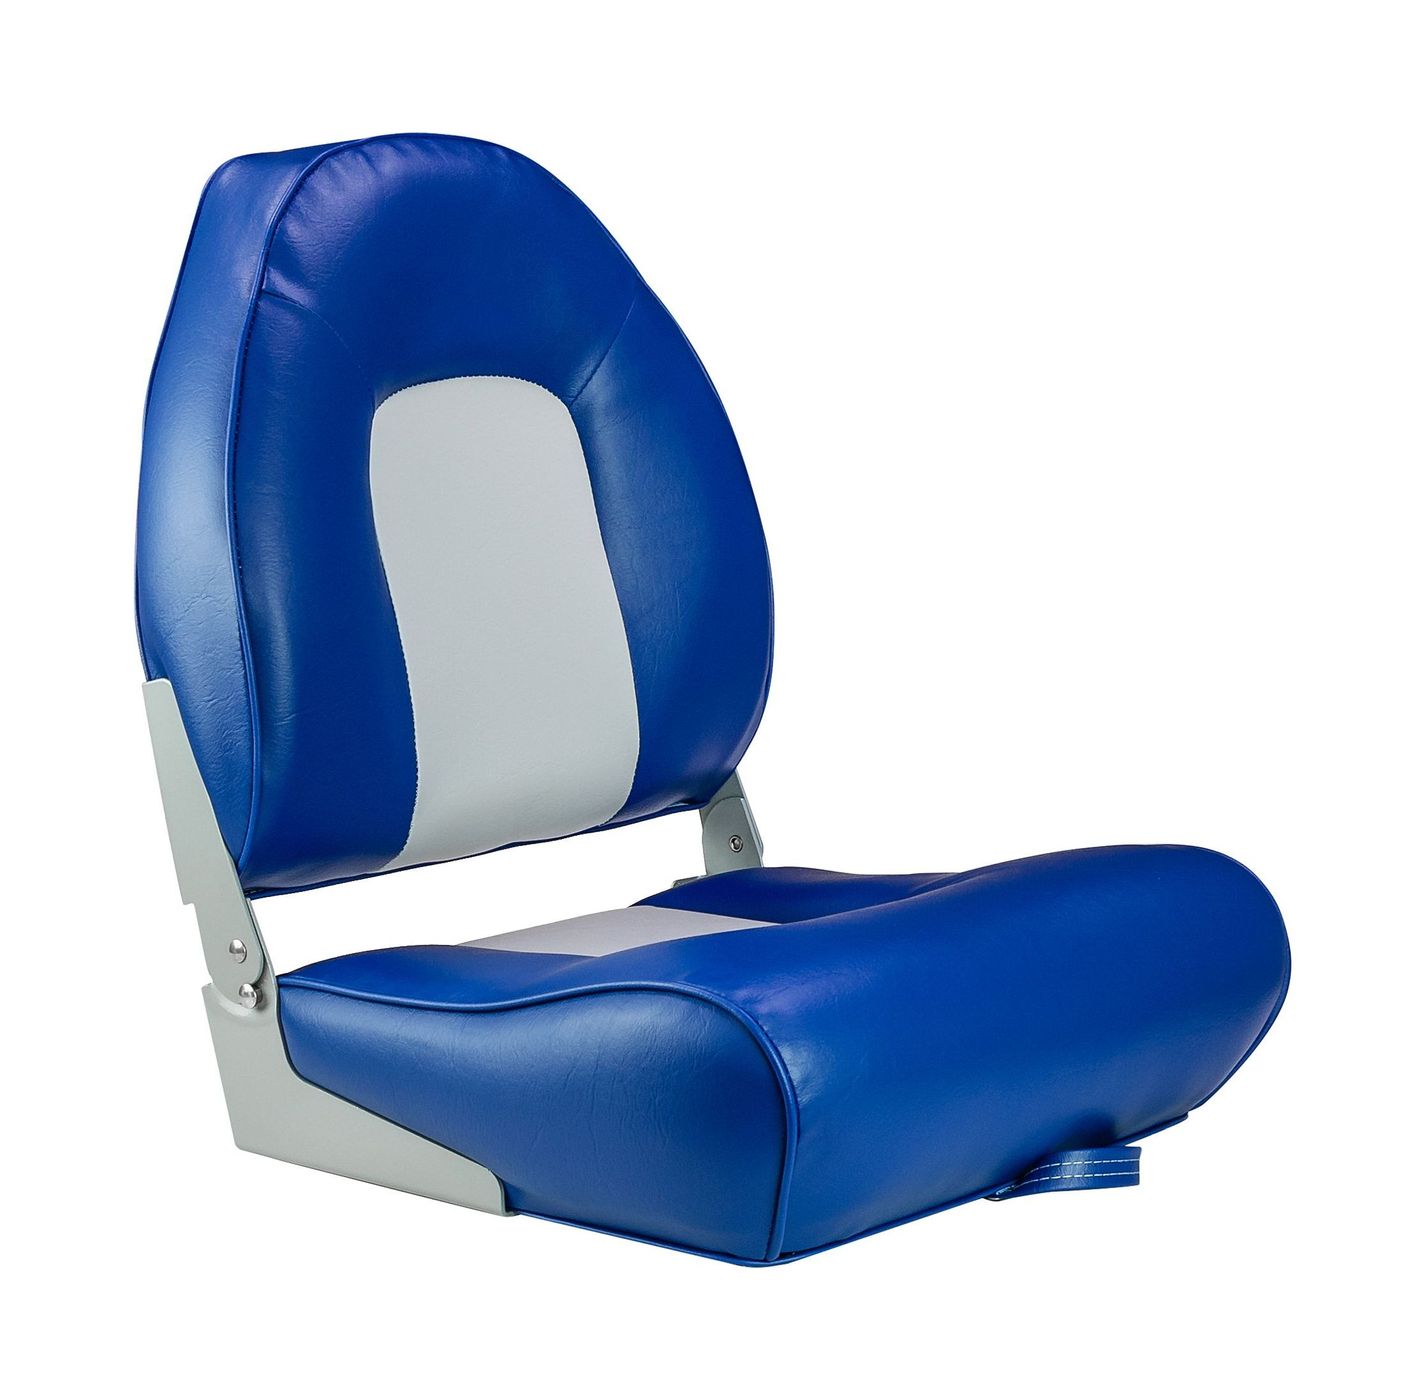 Кресло мягкое складное, обивка винил, цвет синий/серый, Marine Rocket 75116GB-MR кресло tetchair сн757 ткань серый синий с27 с24